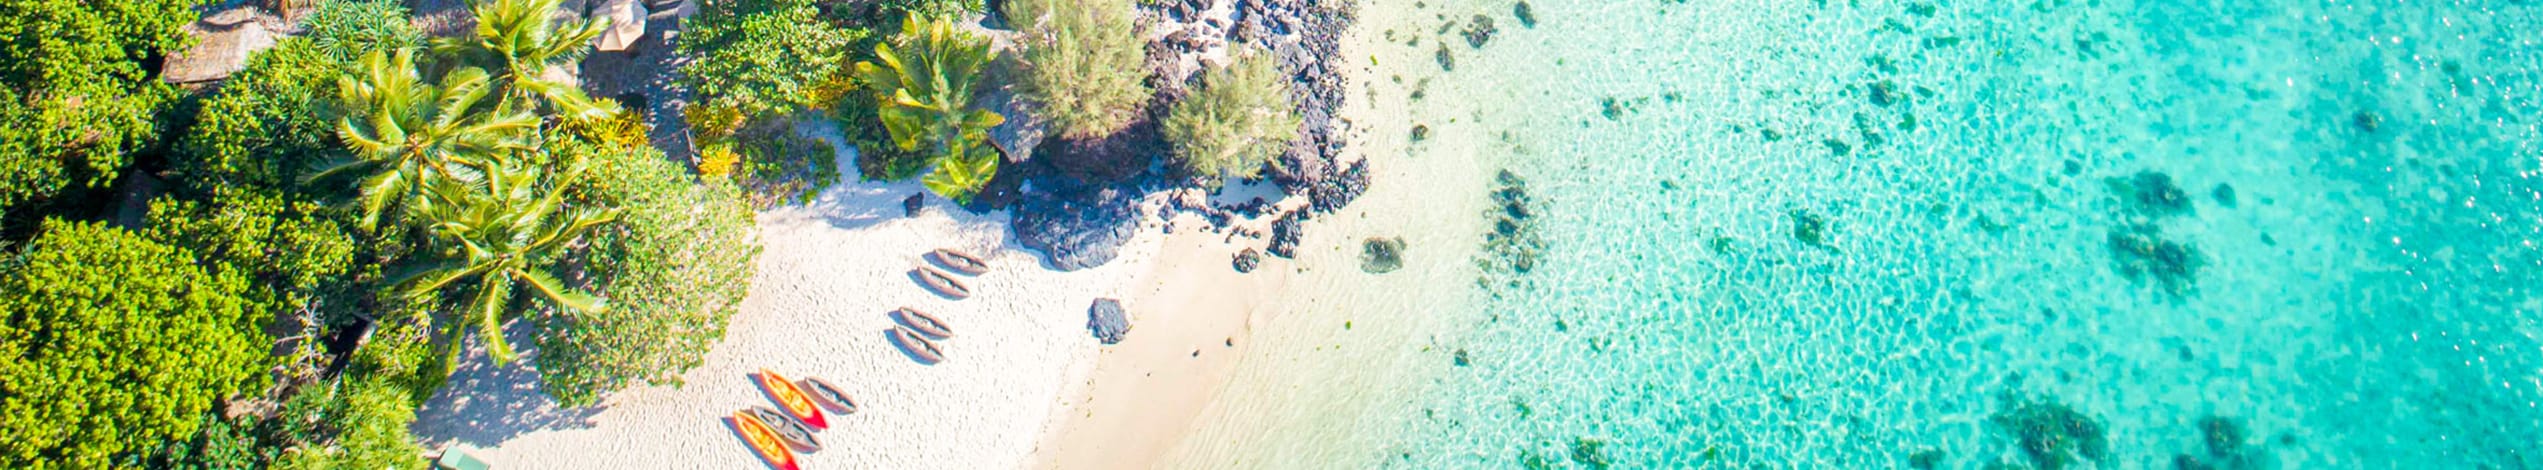 Tag med Jysk Rejsebureau på et deluxe øhop i Cook-øerne